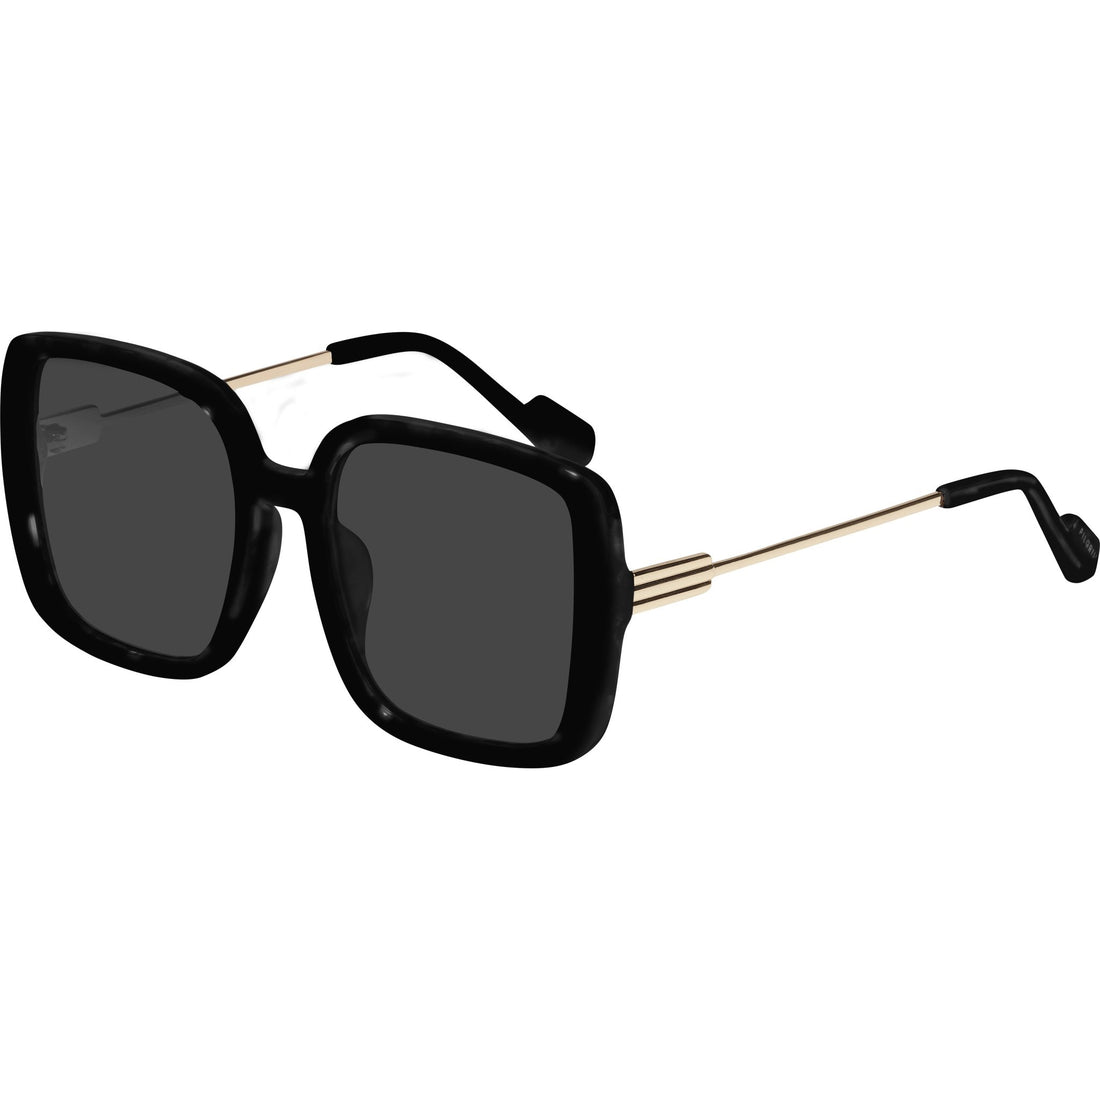 ALIET sunglasses black/gold - PILGRIM